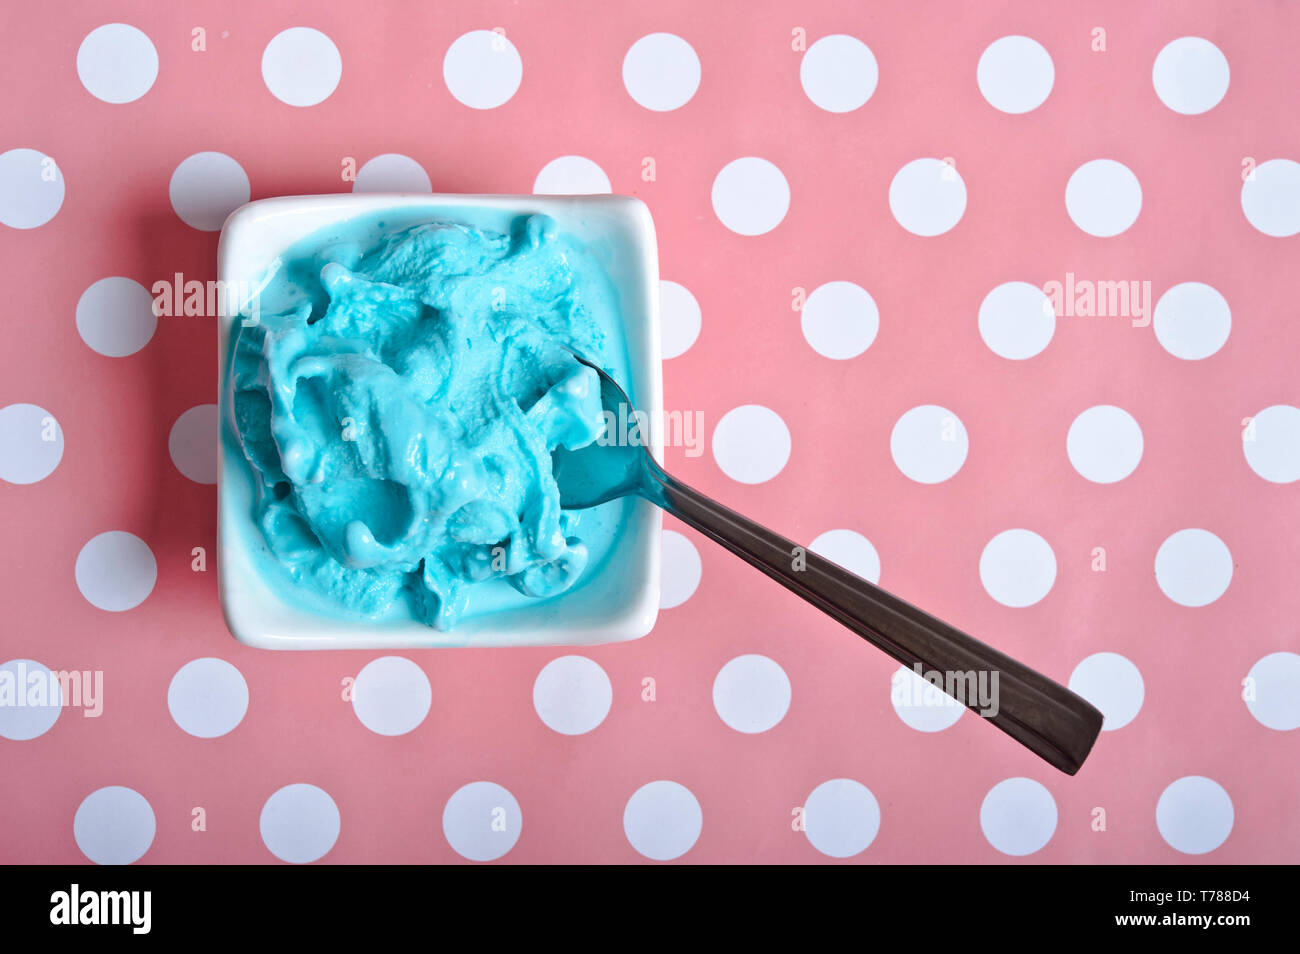 Blue Ice cream dans un bol blanc sur un fond bleu à pois rose Banque D'Images